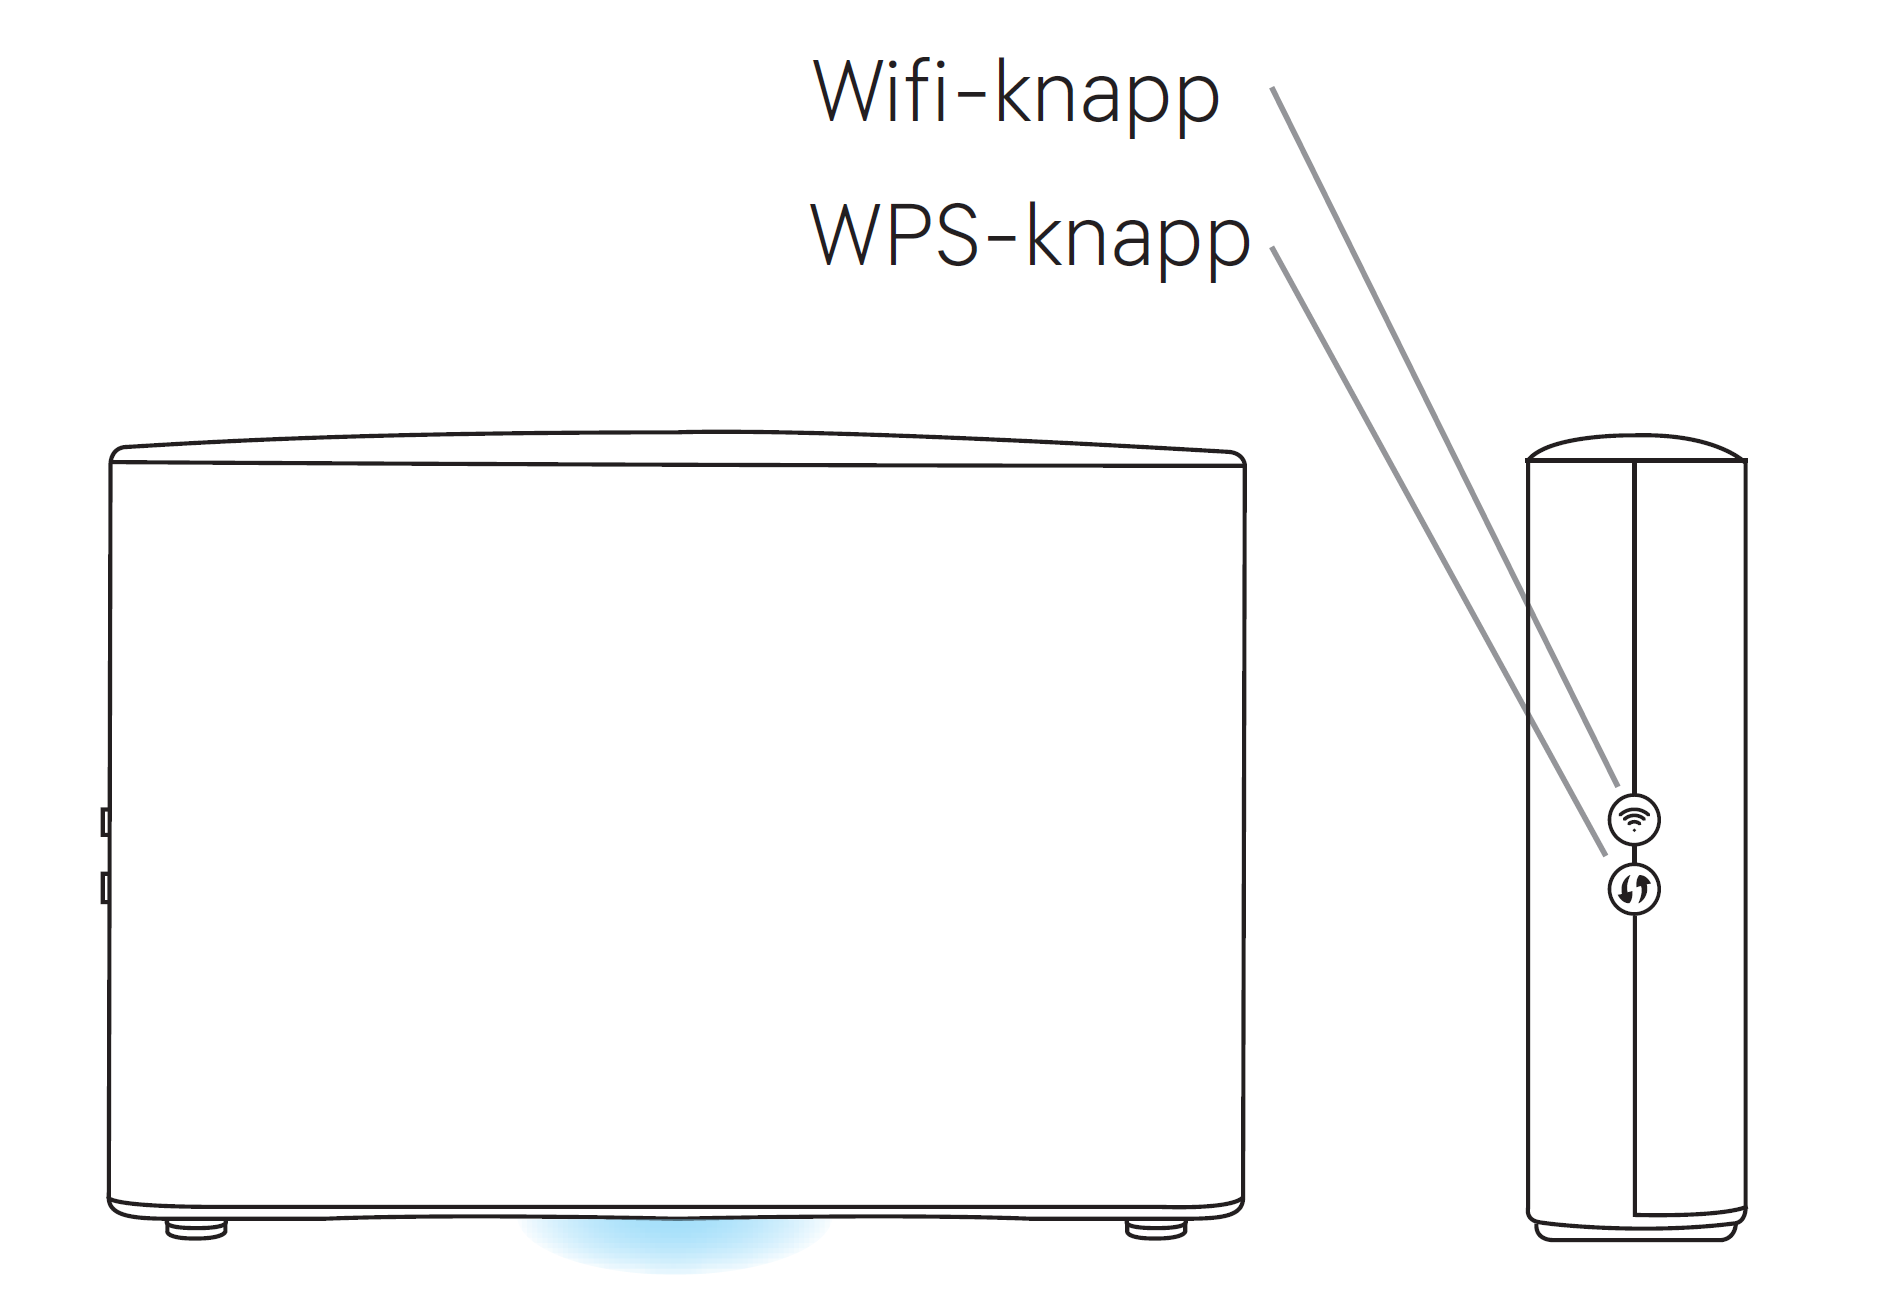 Wifi - WPS-knapp - L2